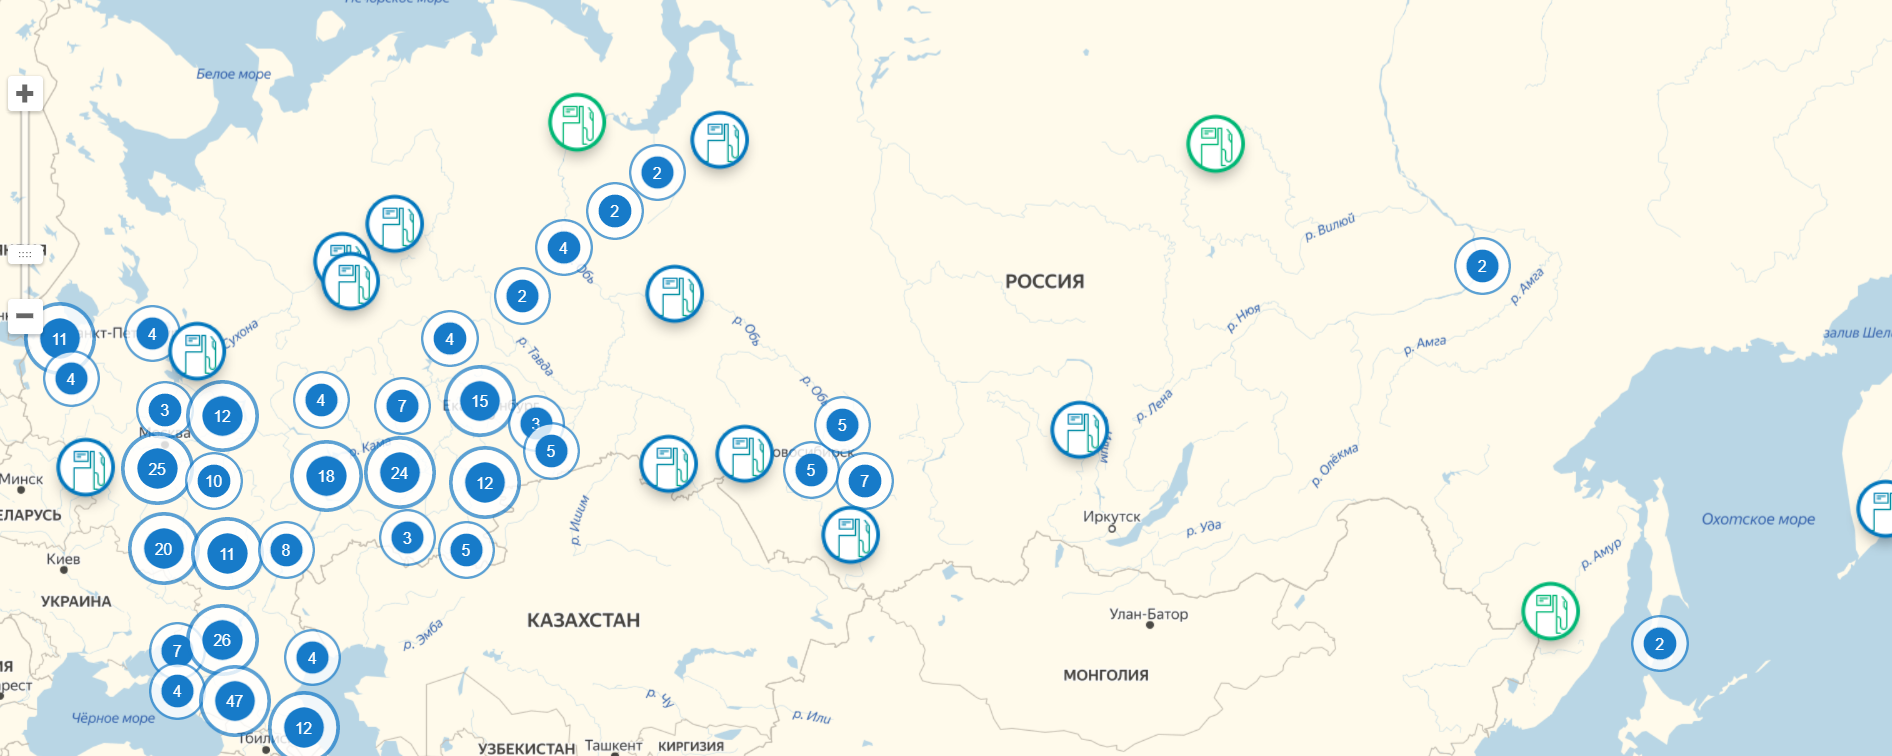 Заправка метан адреса. Метановые заправки на карте России 2022 метан. Заправки метан на карте России 2021. Заправки СПГ В России на карте. Карта заправок АГНКС метан по России.